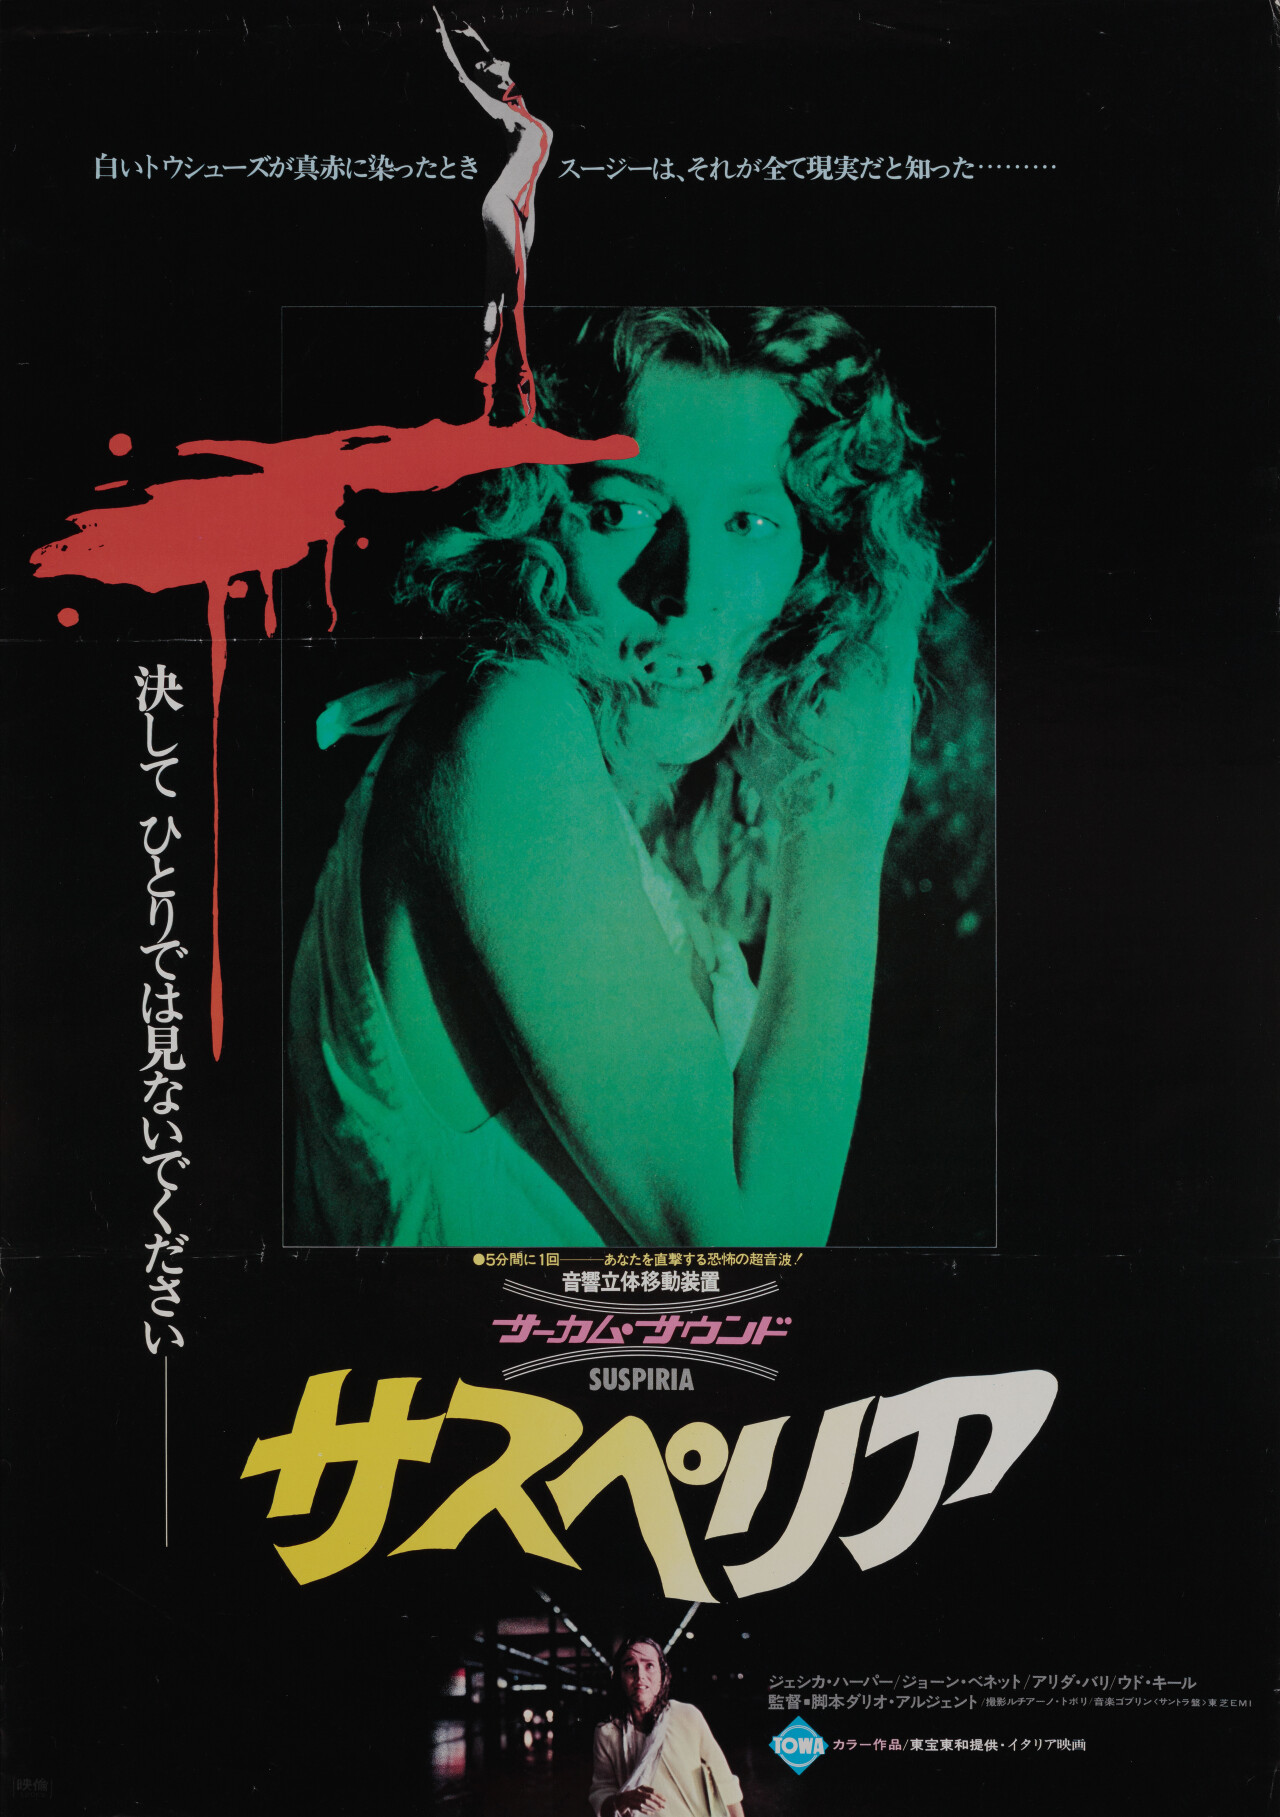 Суспирия (Suspiria, 1977), режиссёр Дарио Ардженто, японский постер к фильму (ужасы, 1977 год)